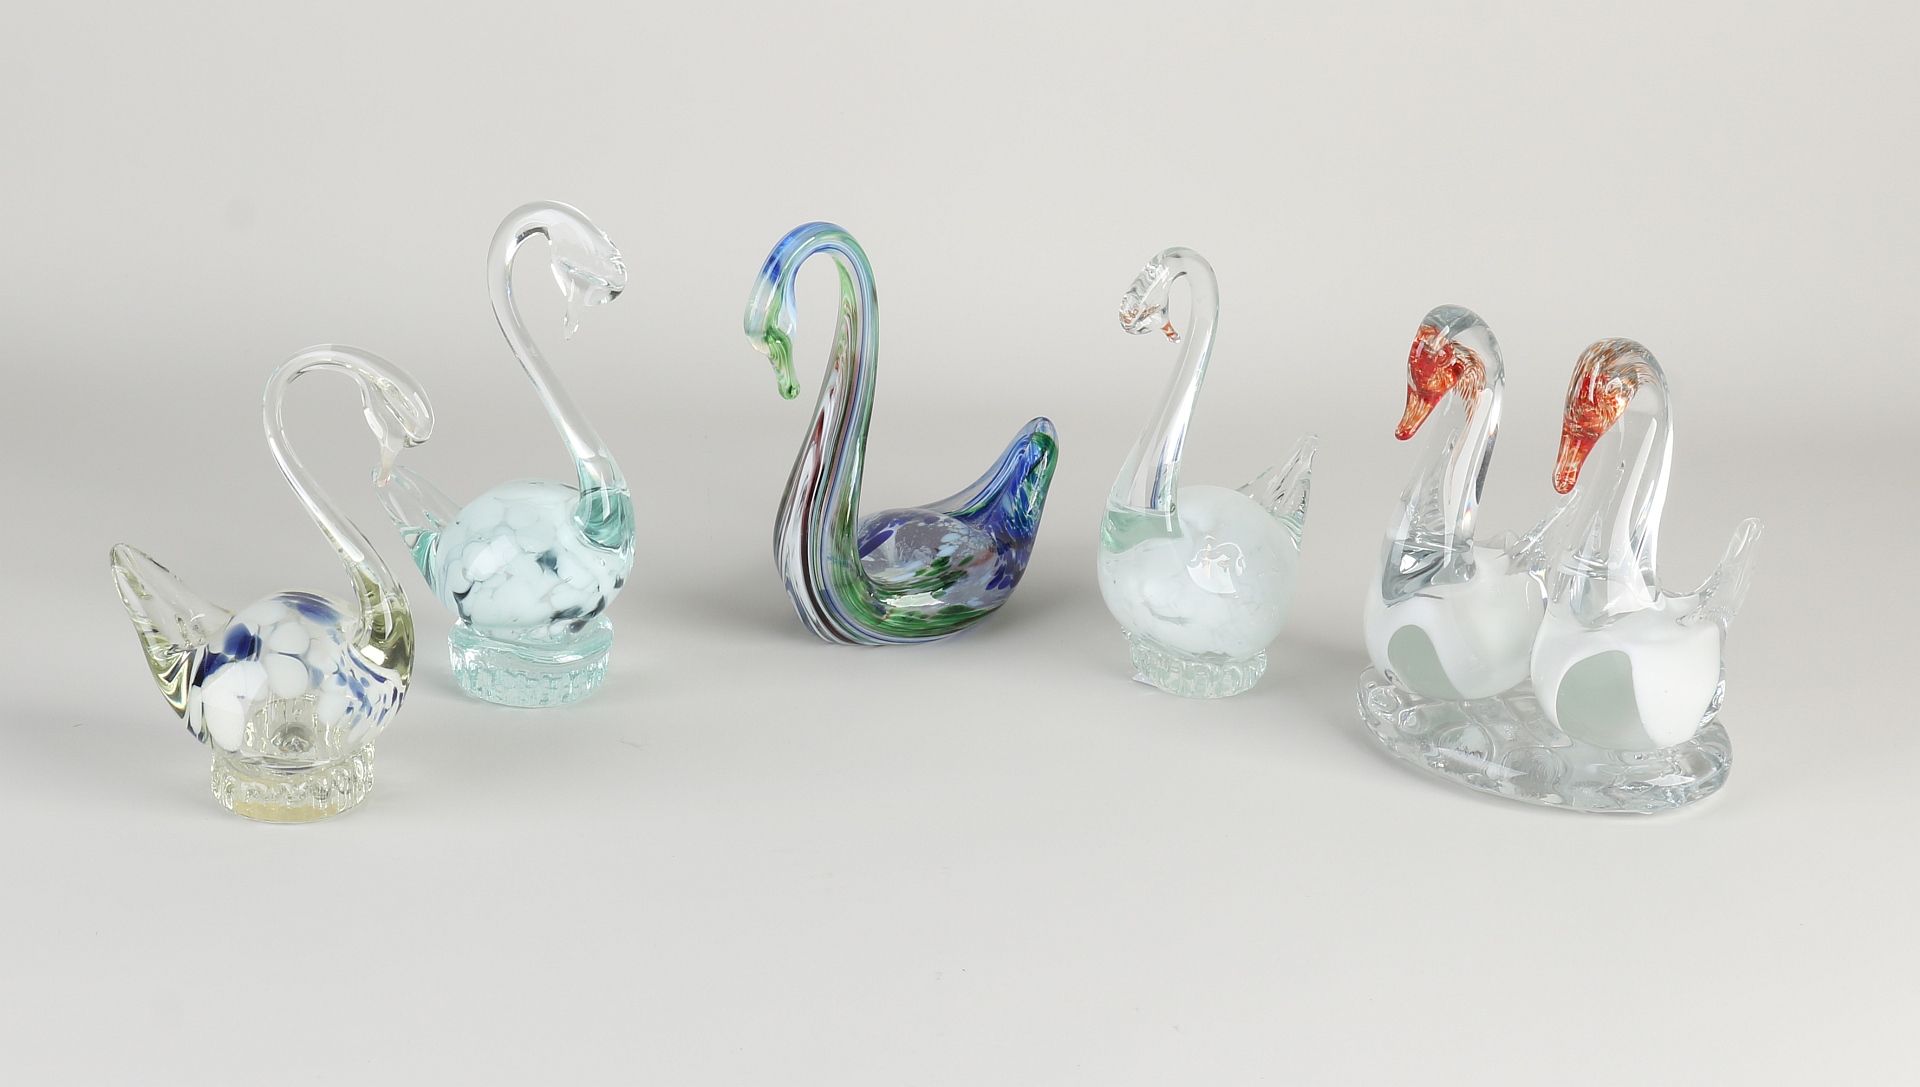 Five glass swan figures